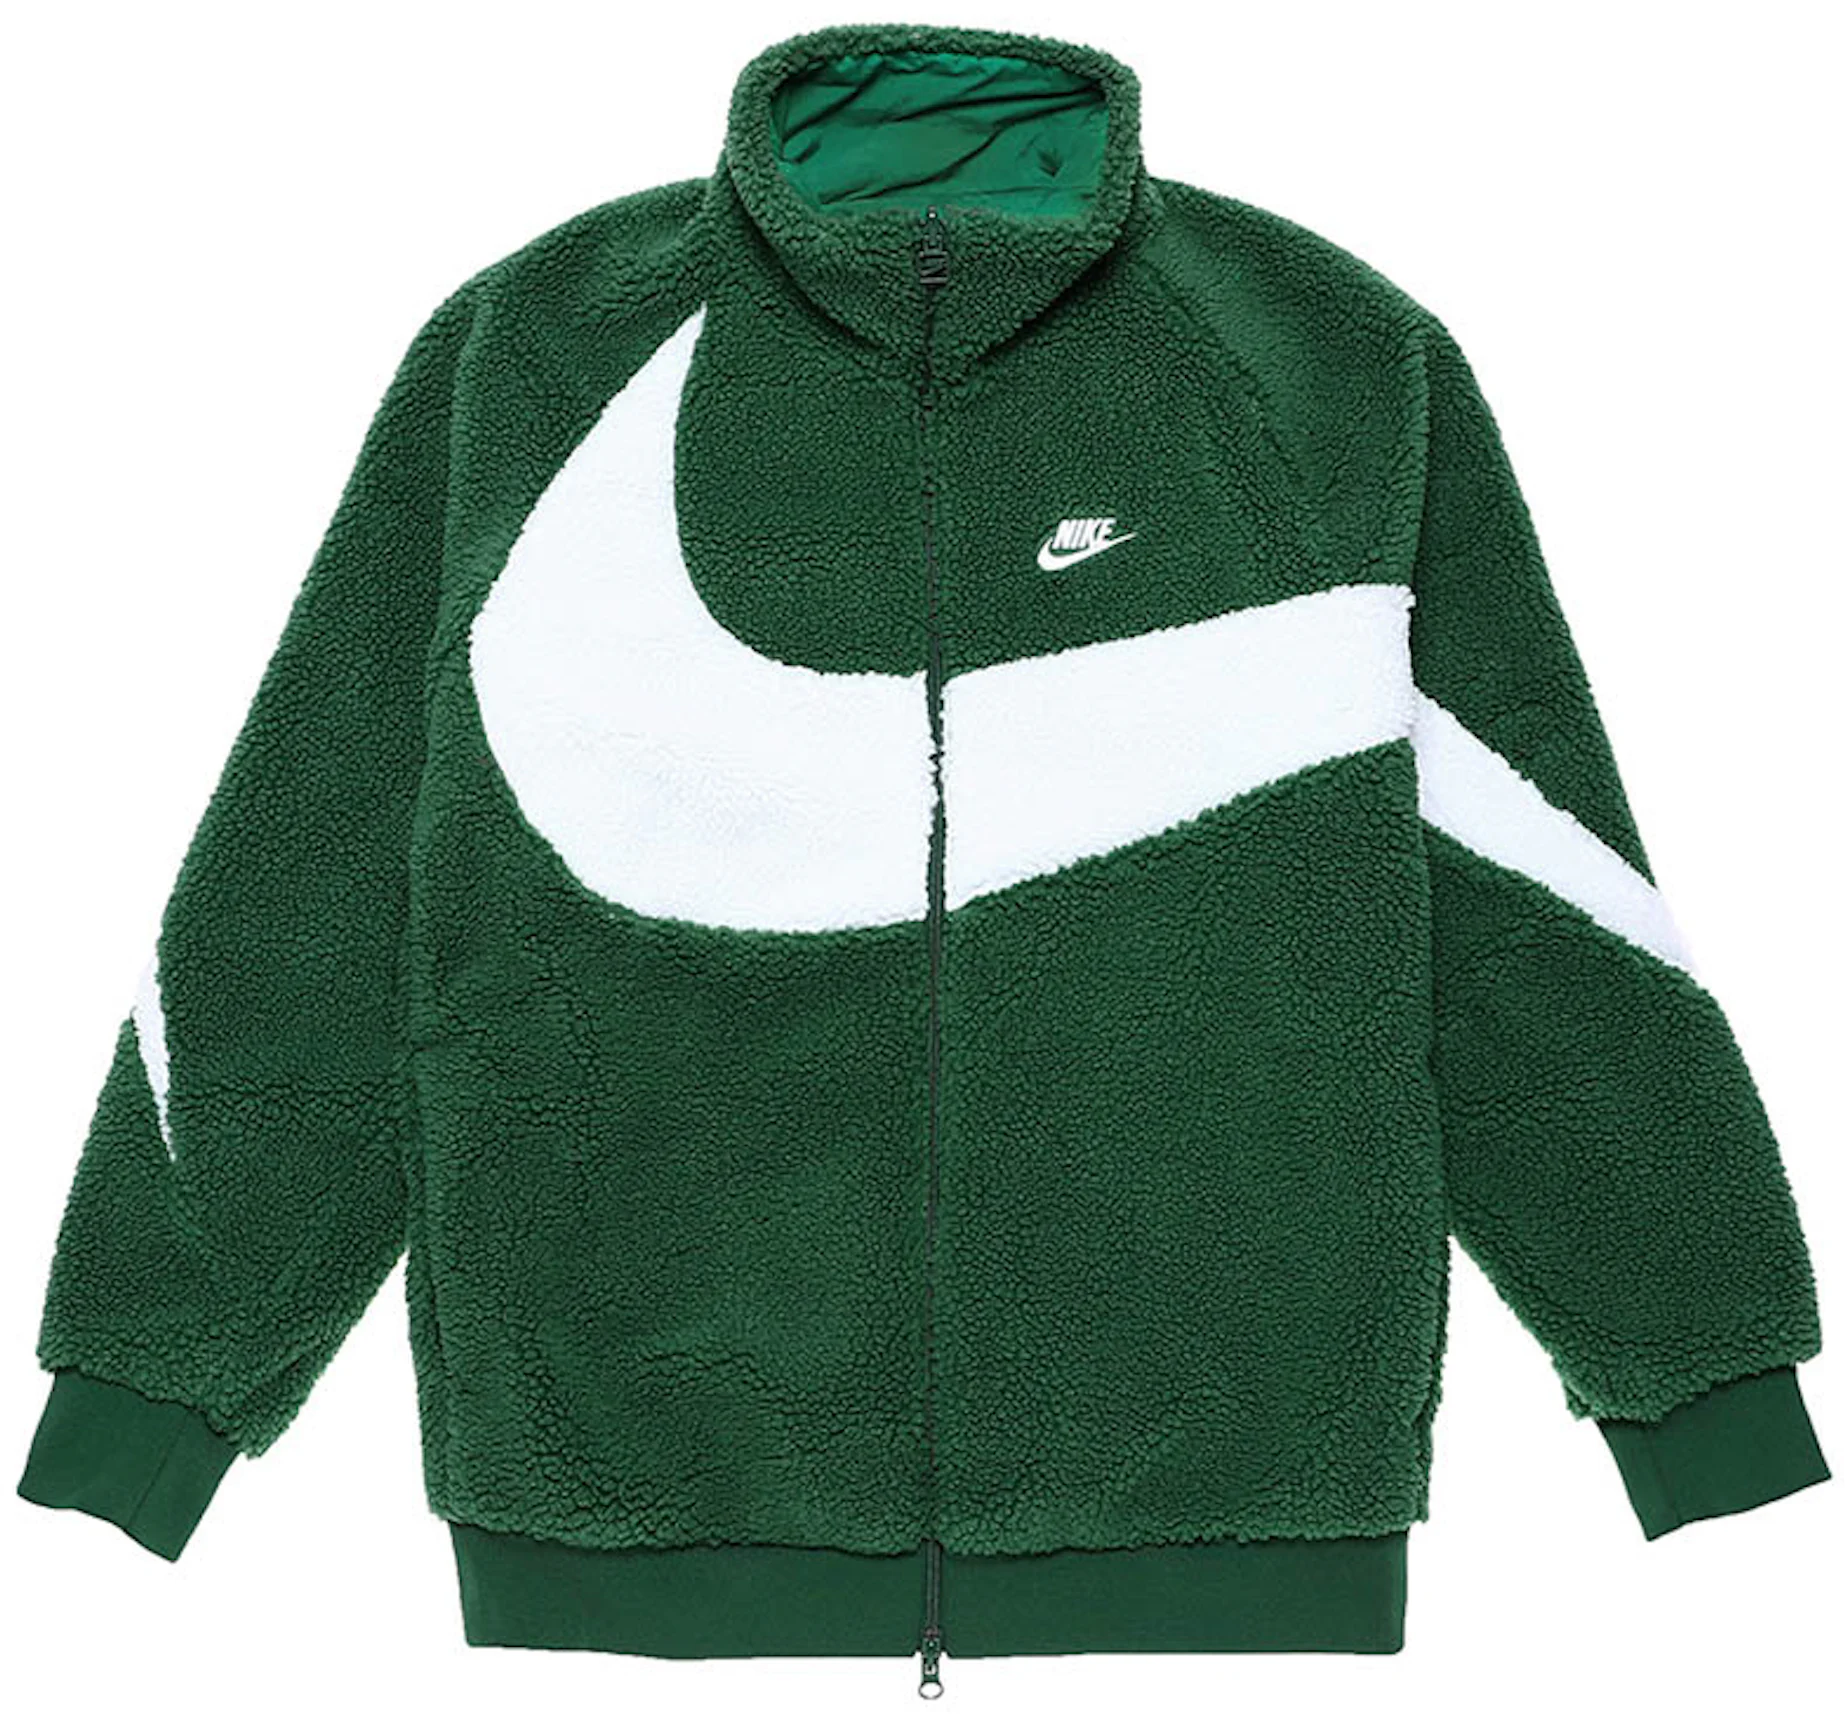 Nike Big Swoosh Reversible Boa Jacket (Asia Sizing) Gorge Green Men's -  FW22 - US